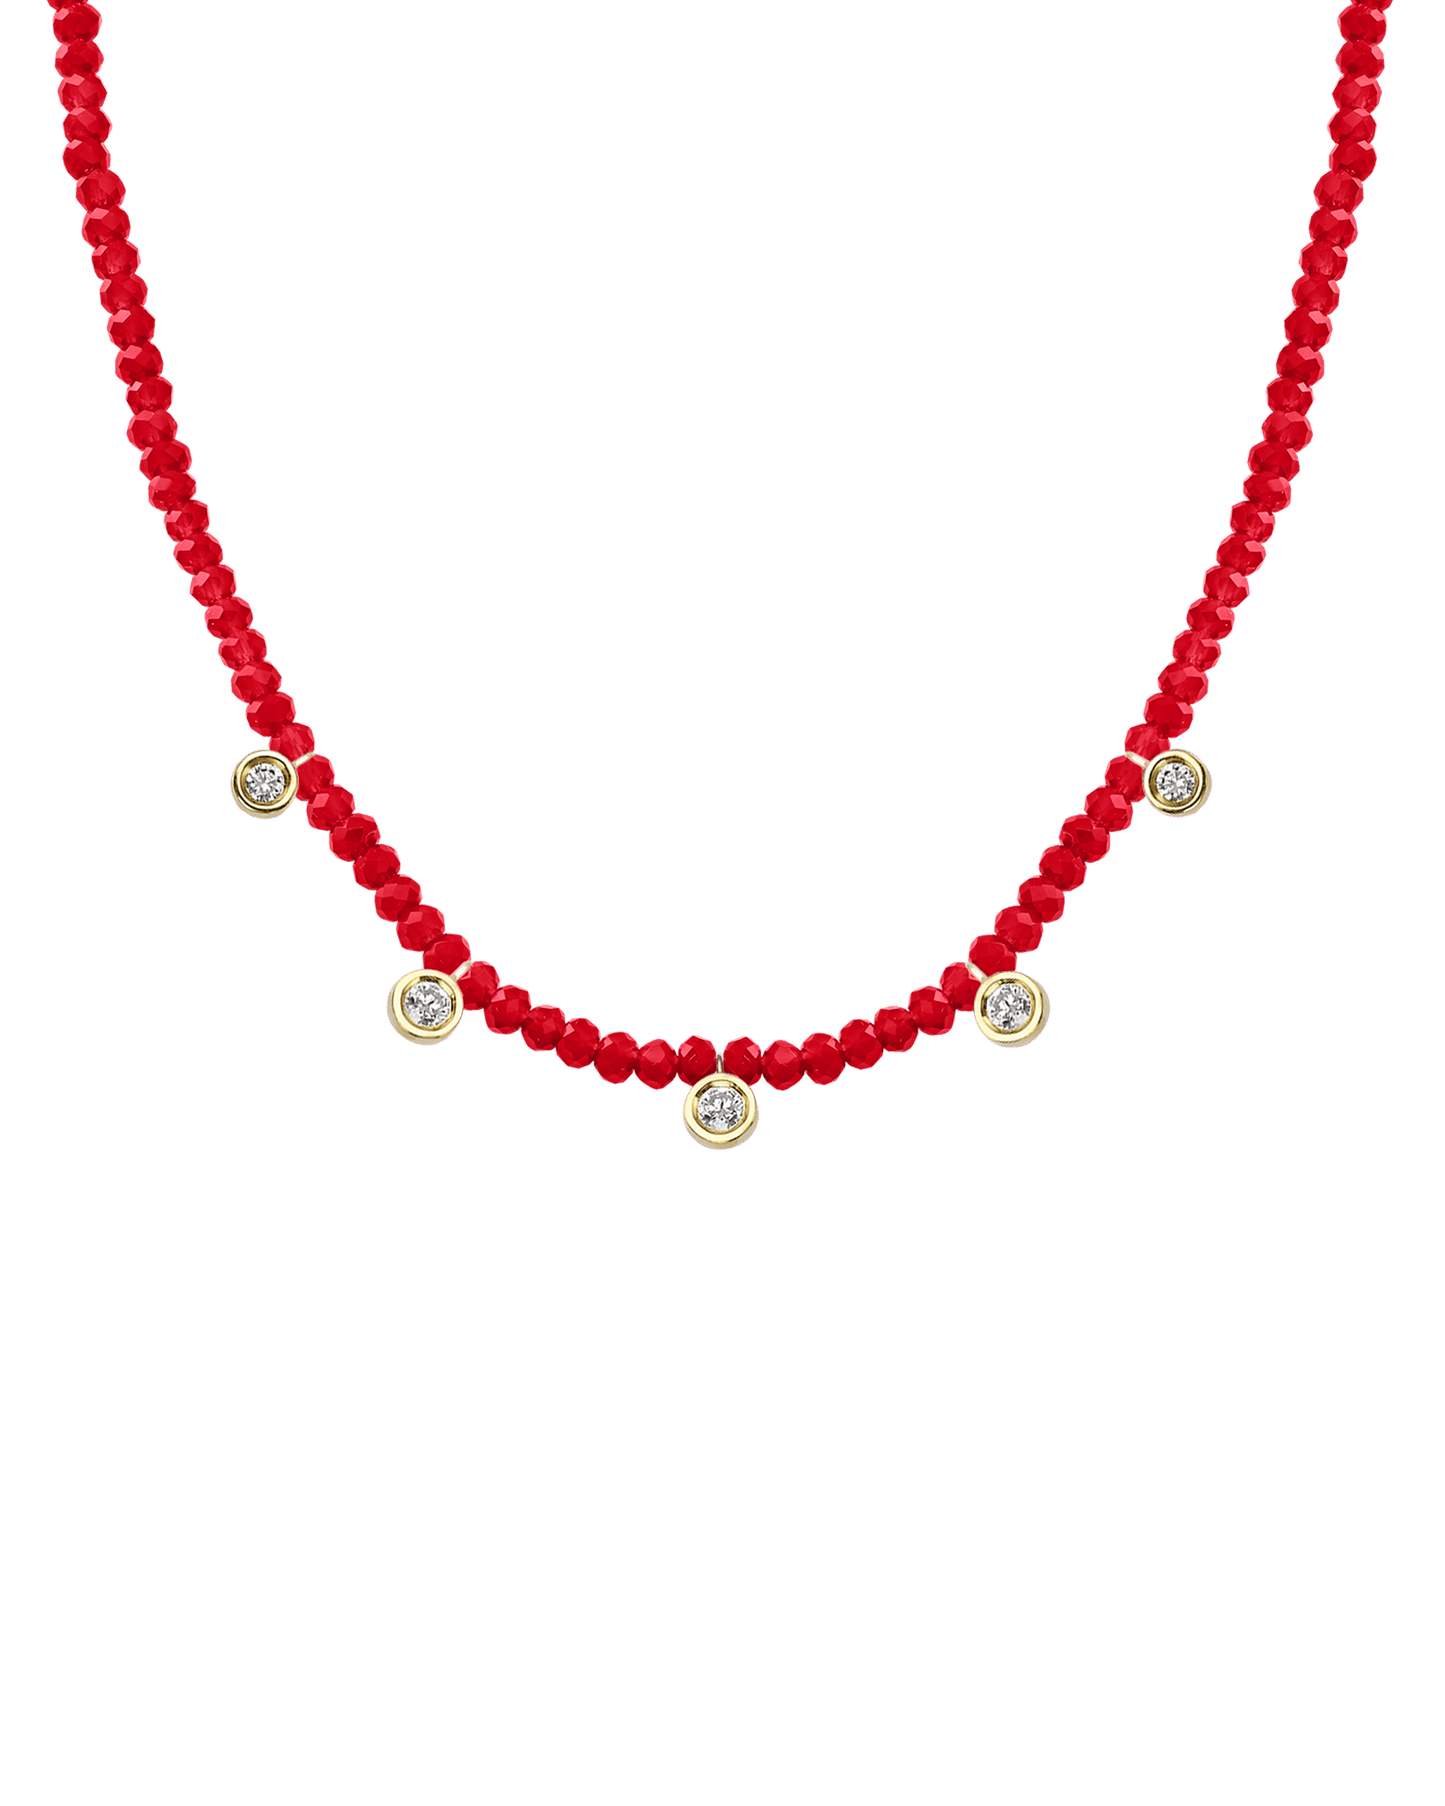 Blue Lapis Gemstone & Five diamonds Necklace - 14K White Gold Necklaces magal-dev 